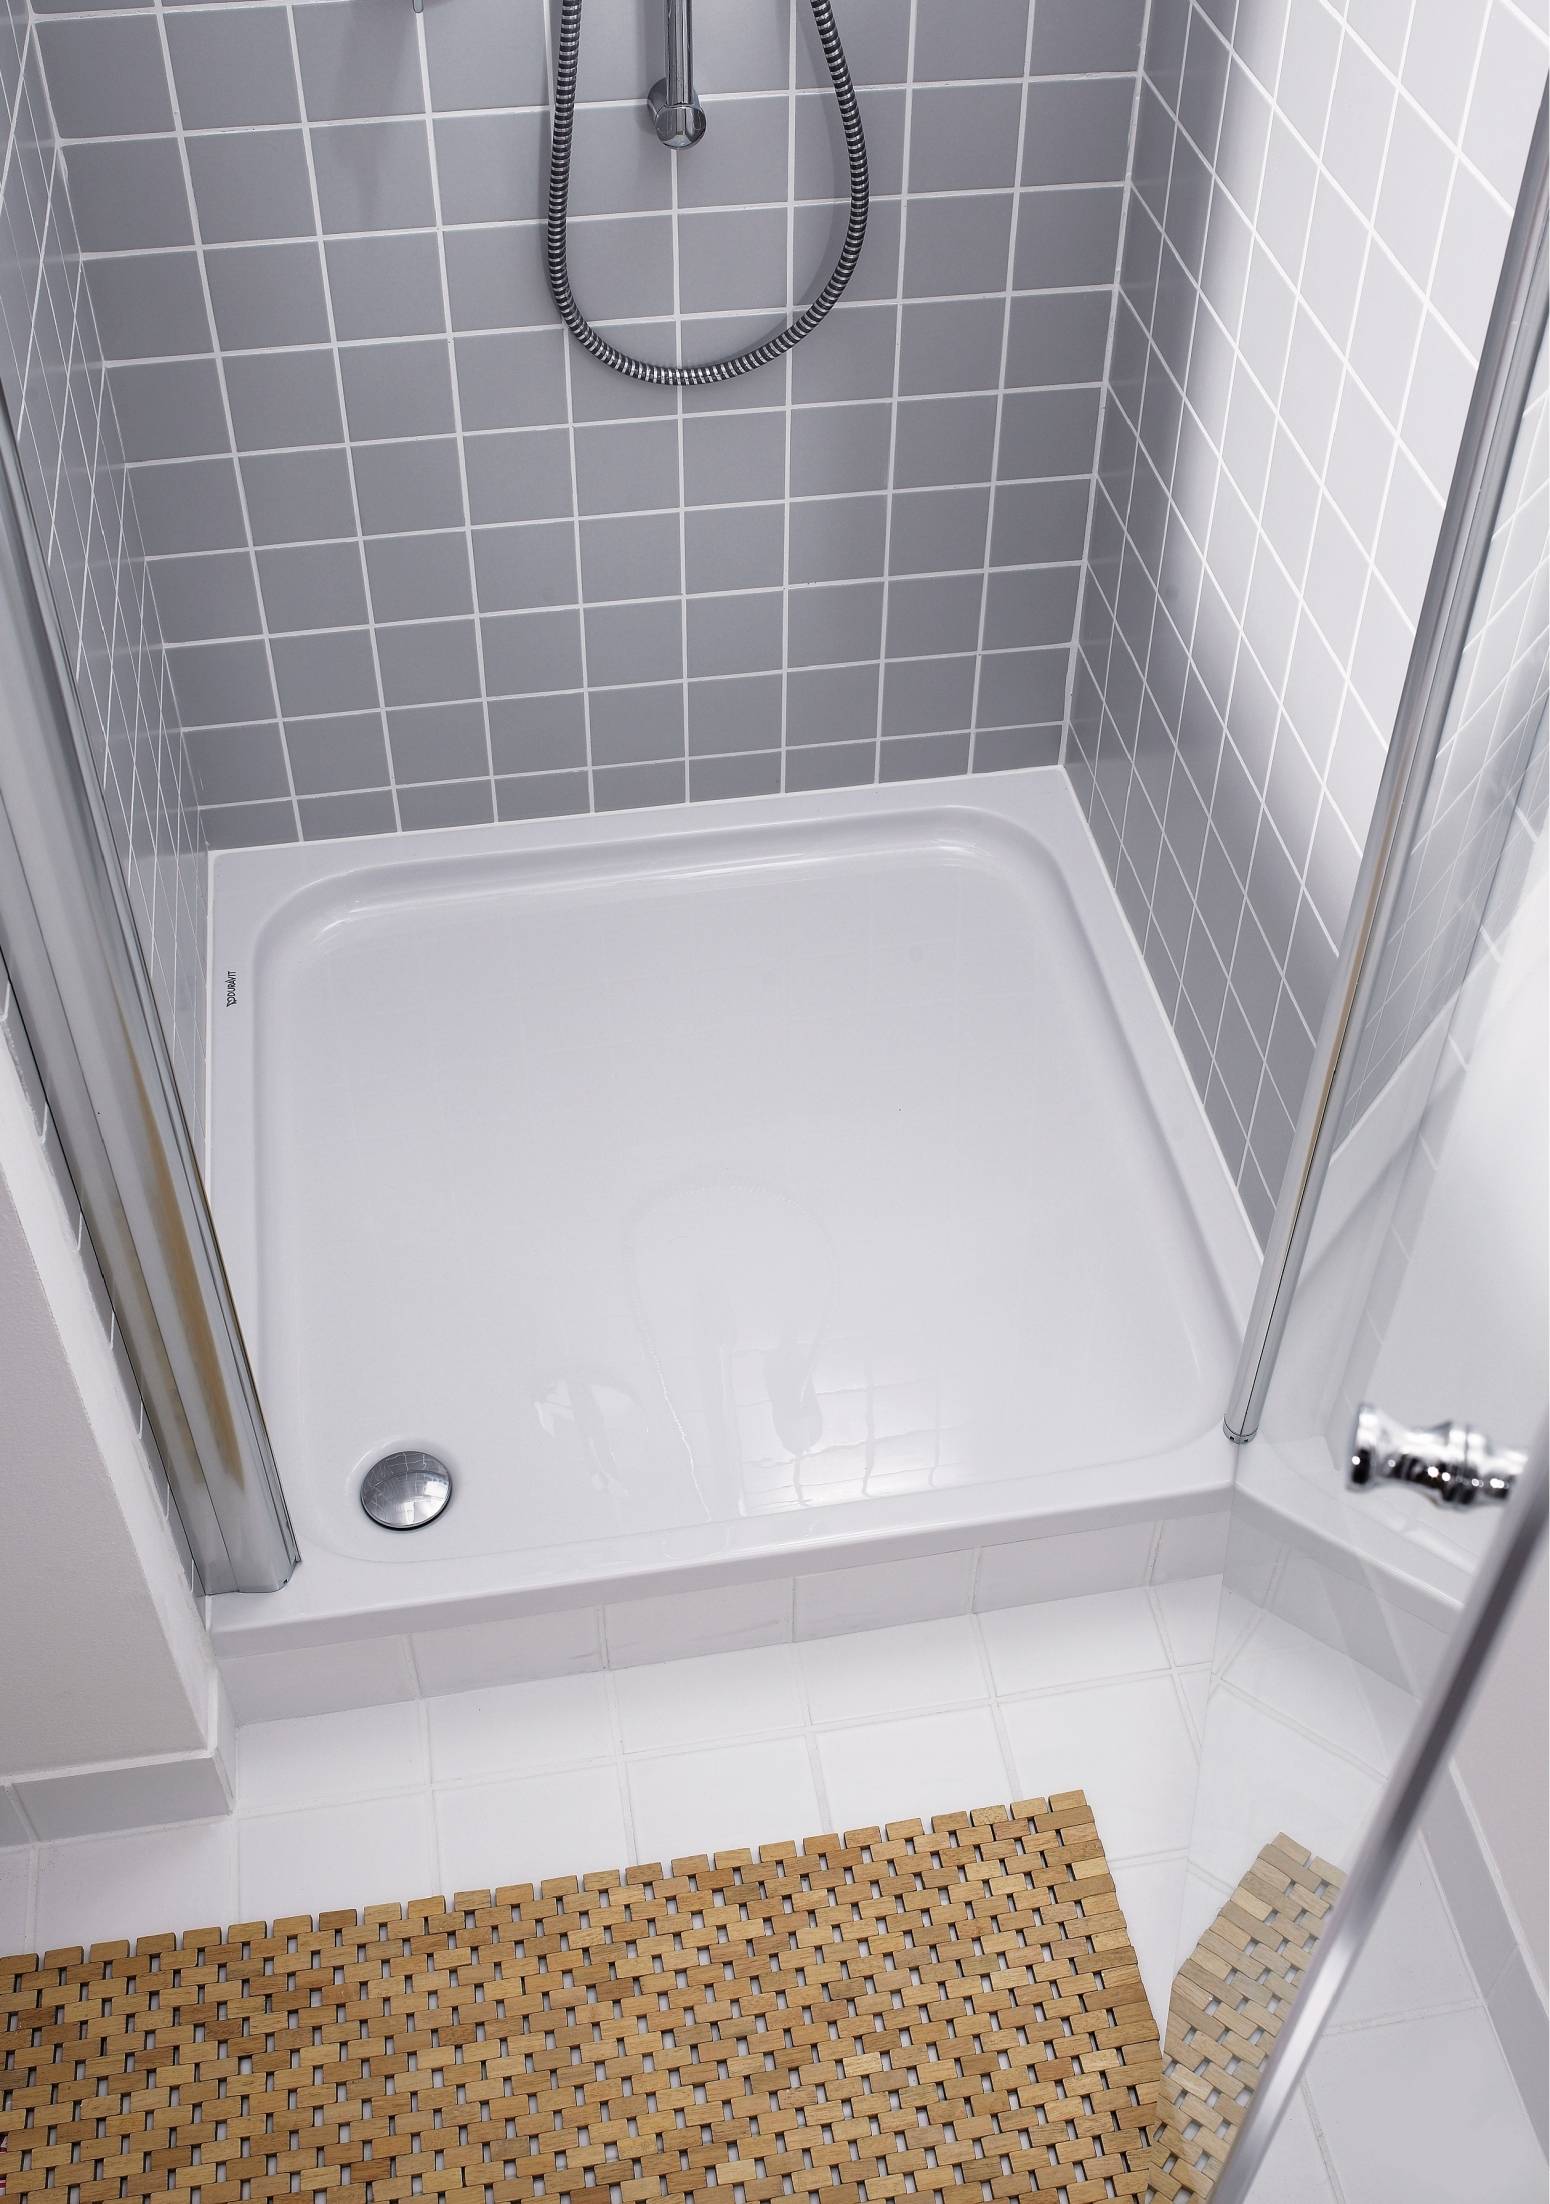 Дизайн ванной комнаты с душевой кабиной (фото) – идеи интерьера и планировки